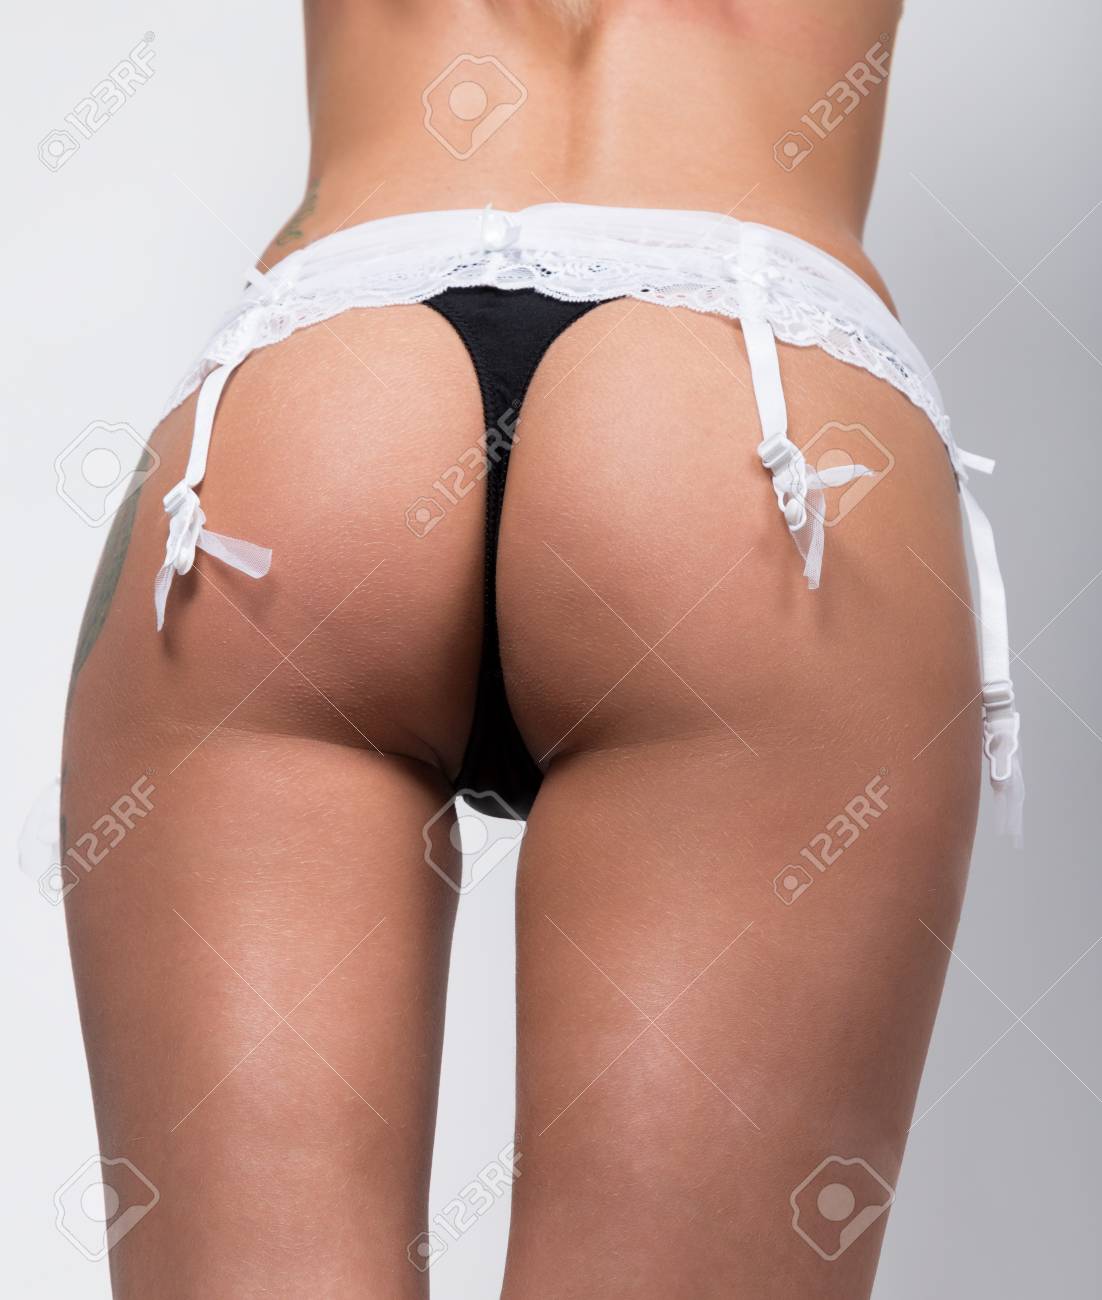 See through panties ass